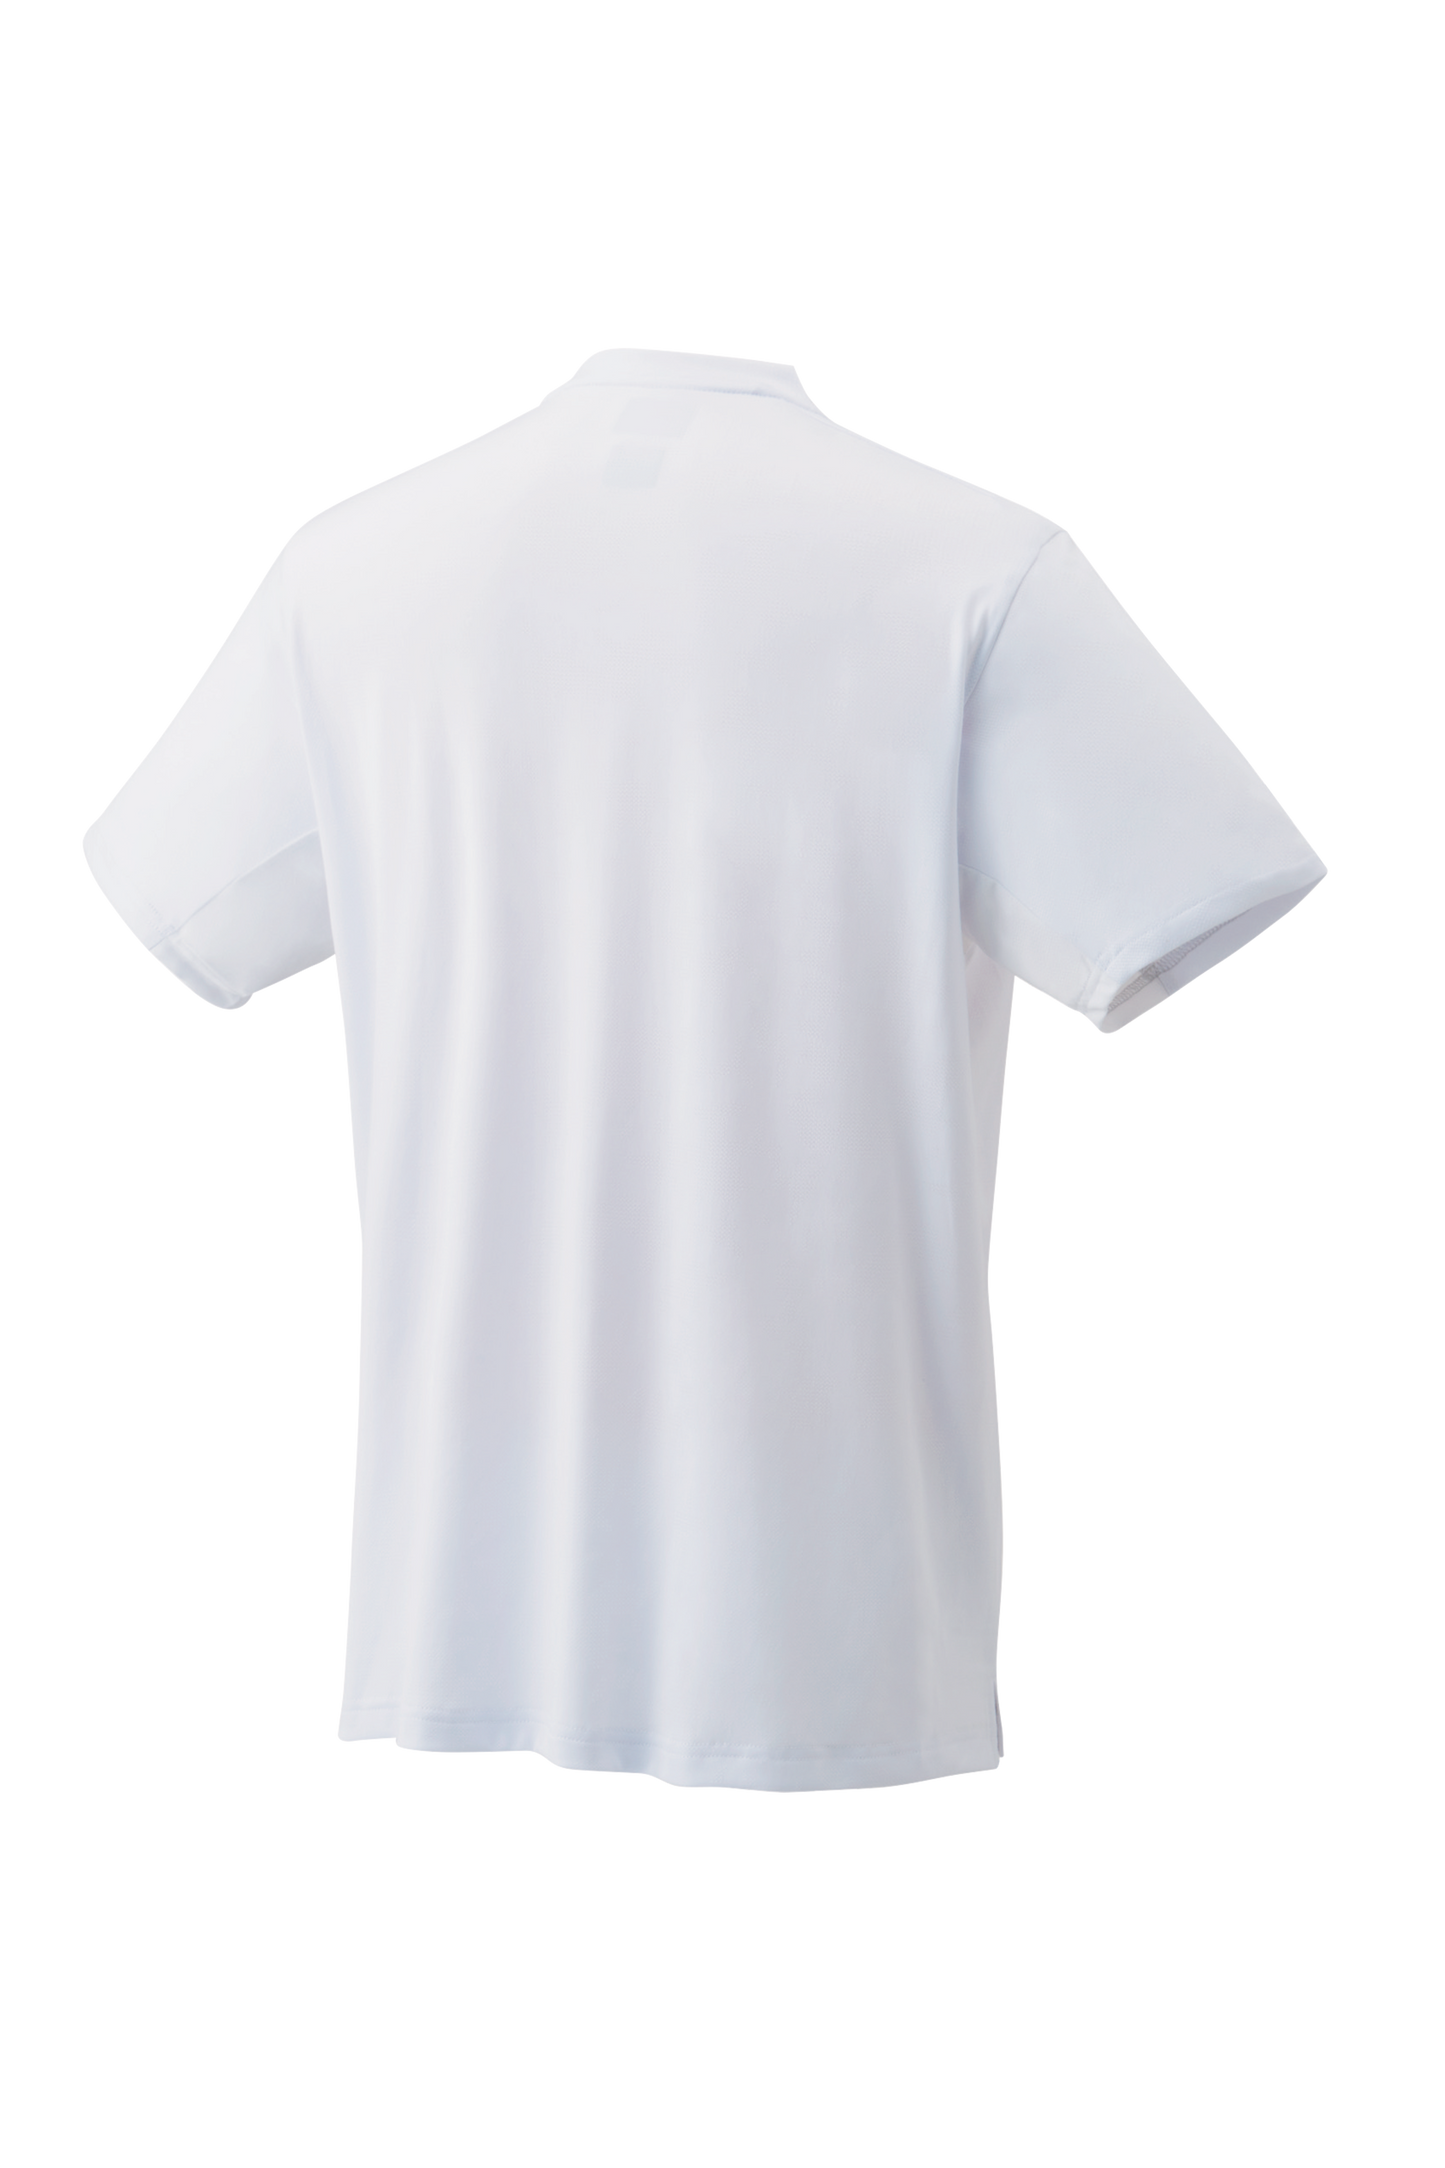 YONEX Men's Shirt 10452 Wimbledon [White] - Max Sports